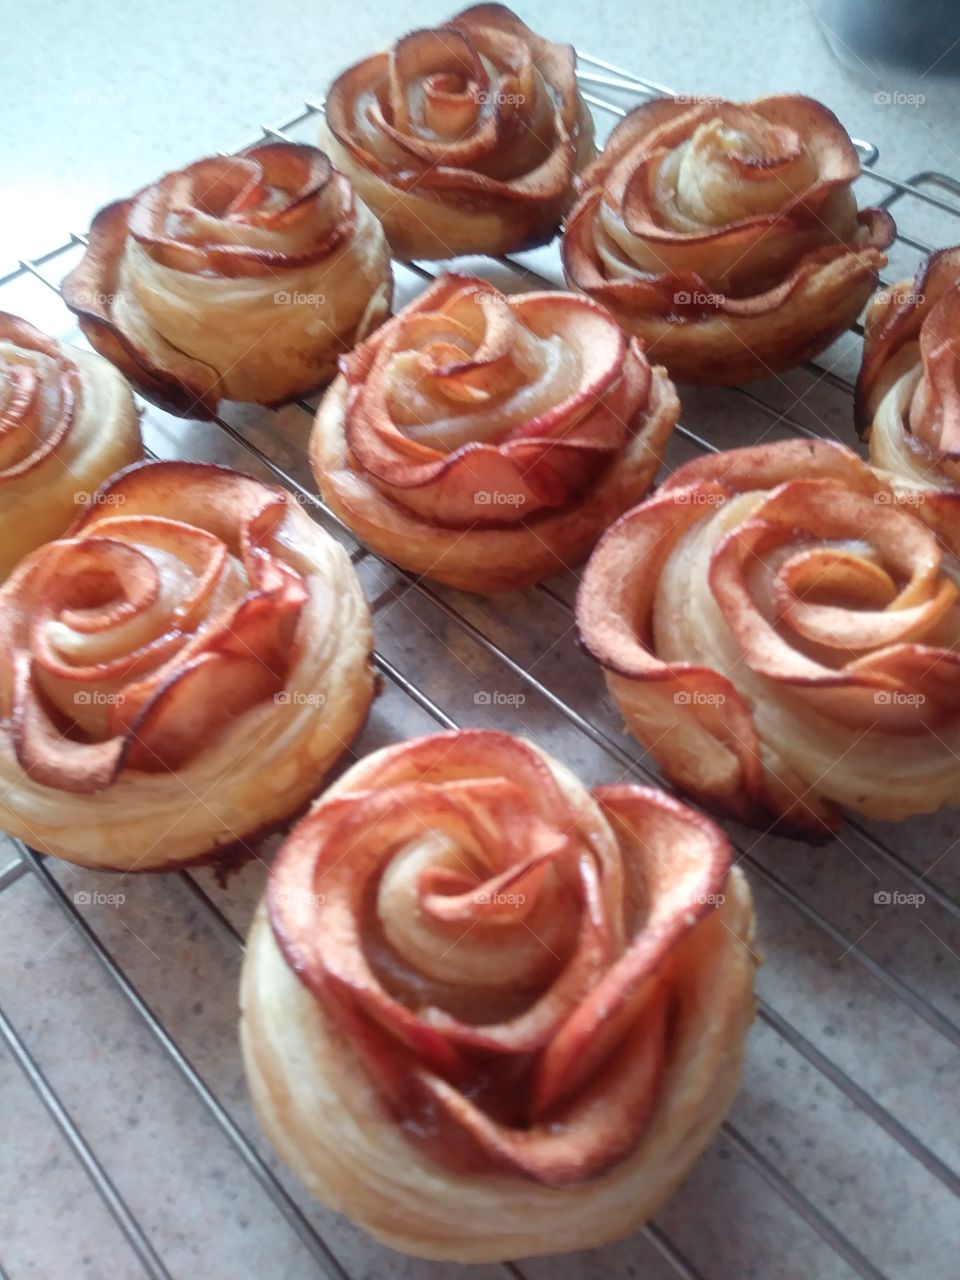 Apple rose tartlets